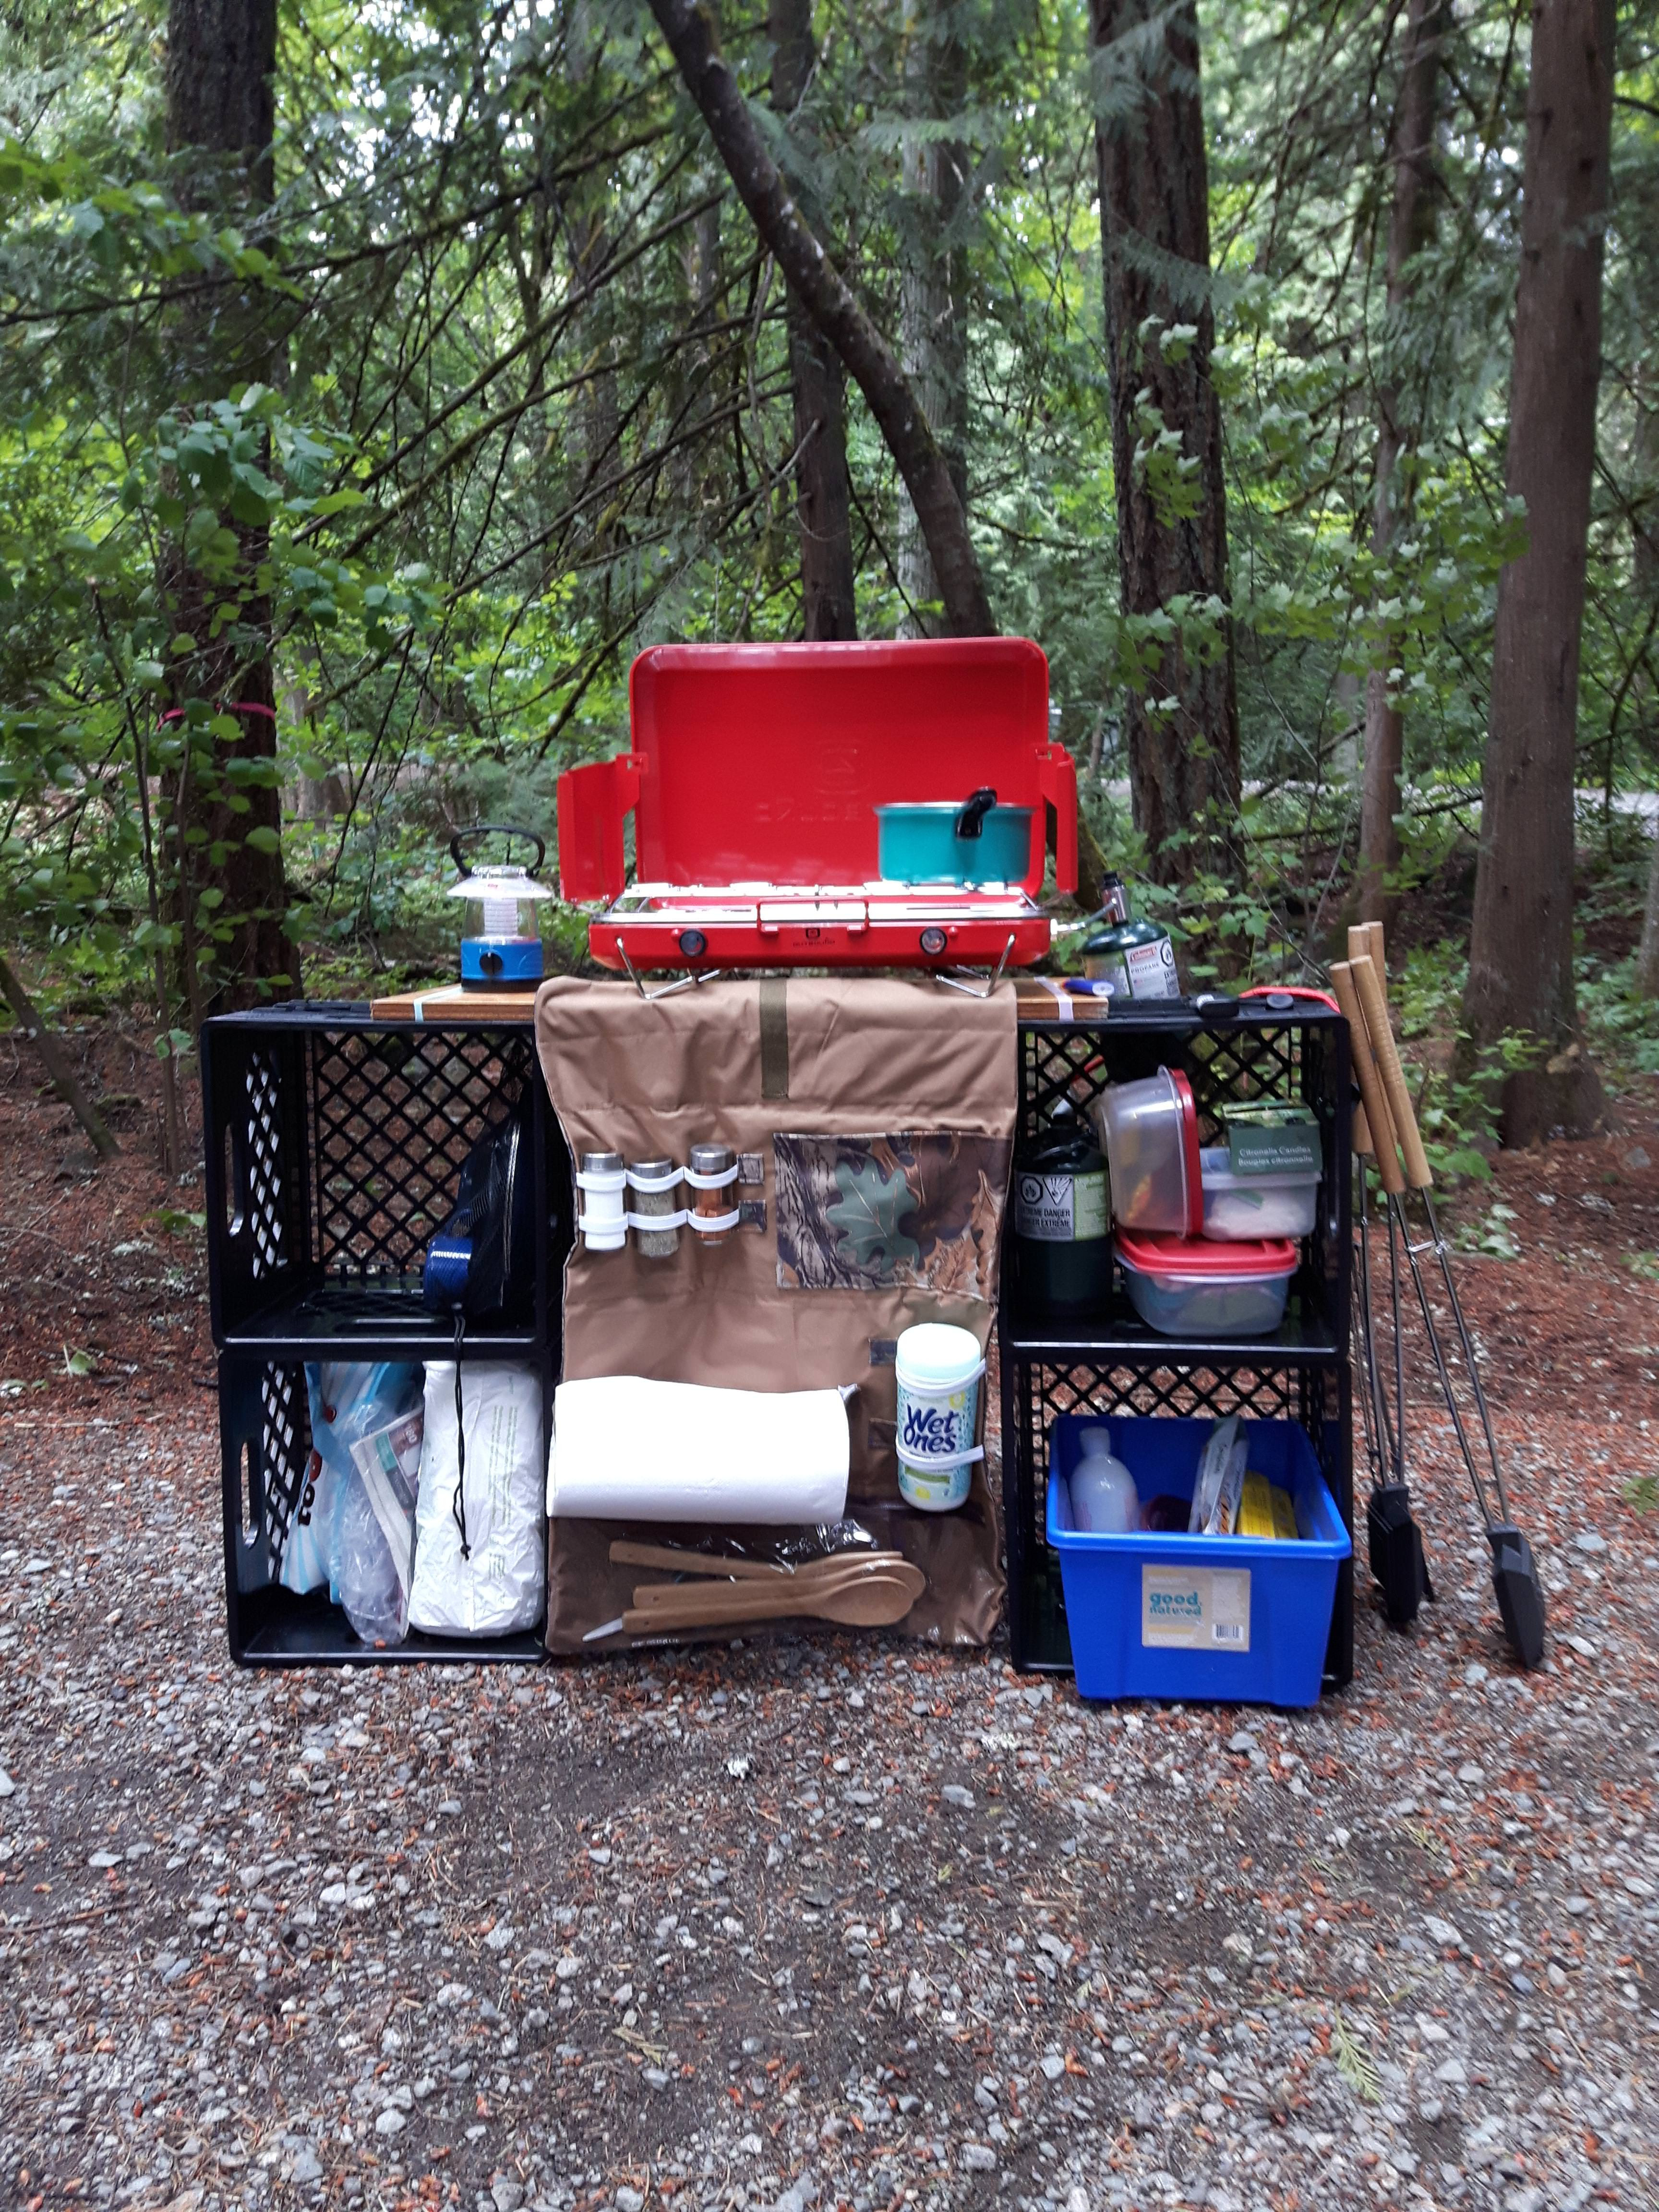 Best ideas about DIY Camp Kitchen Organizer
. Save or Pin Tutorial Roll up camp kitchen organizer – Sewing Now.